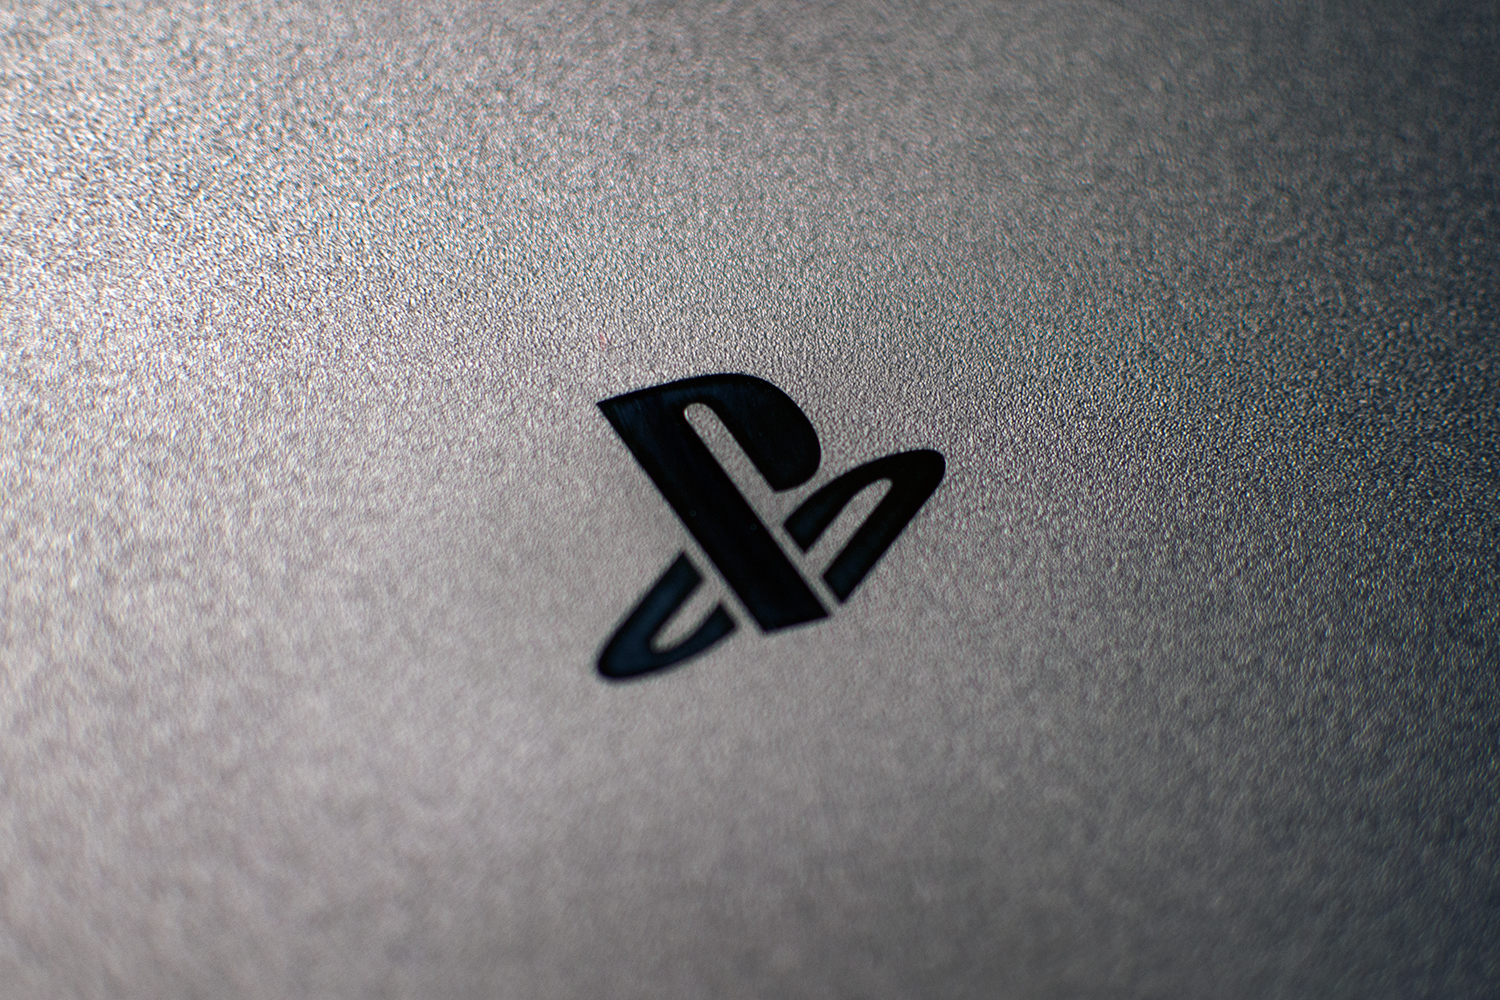 Sony confirma data de lançamento do PS4 Pro no Brasil